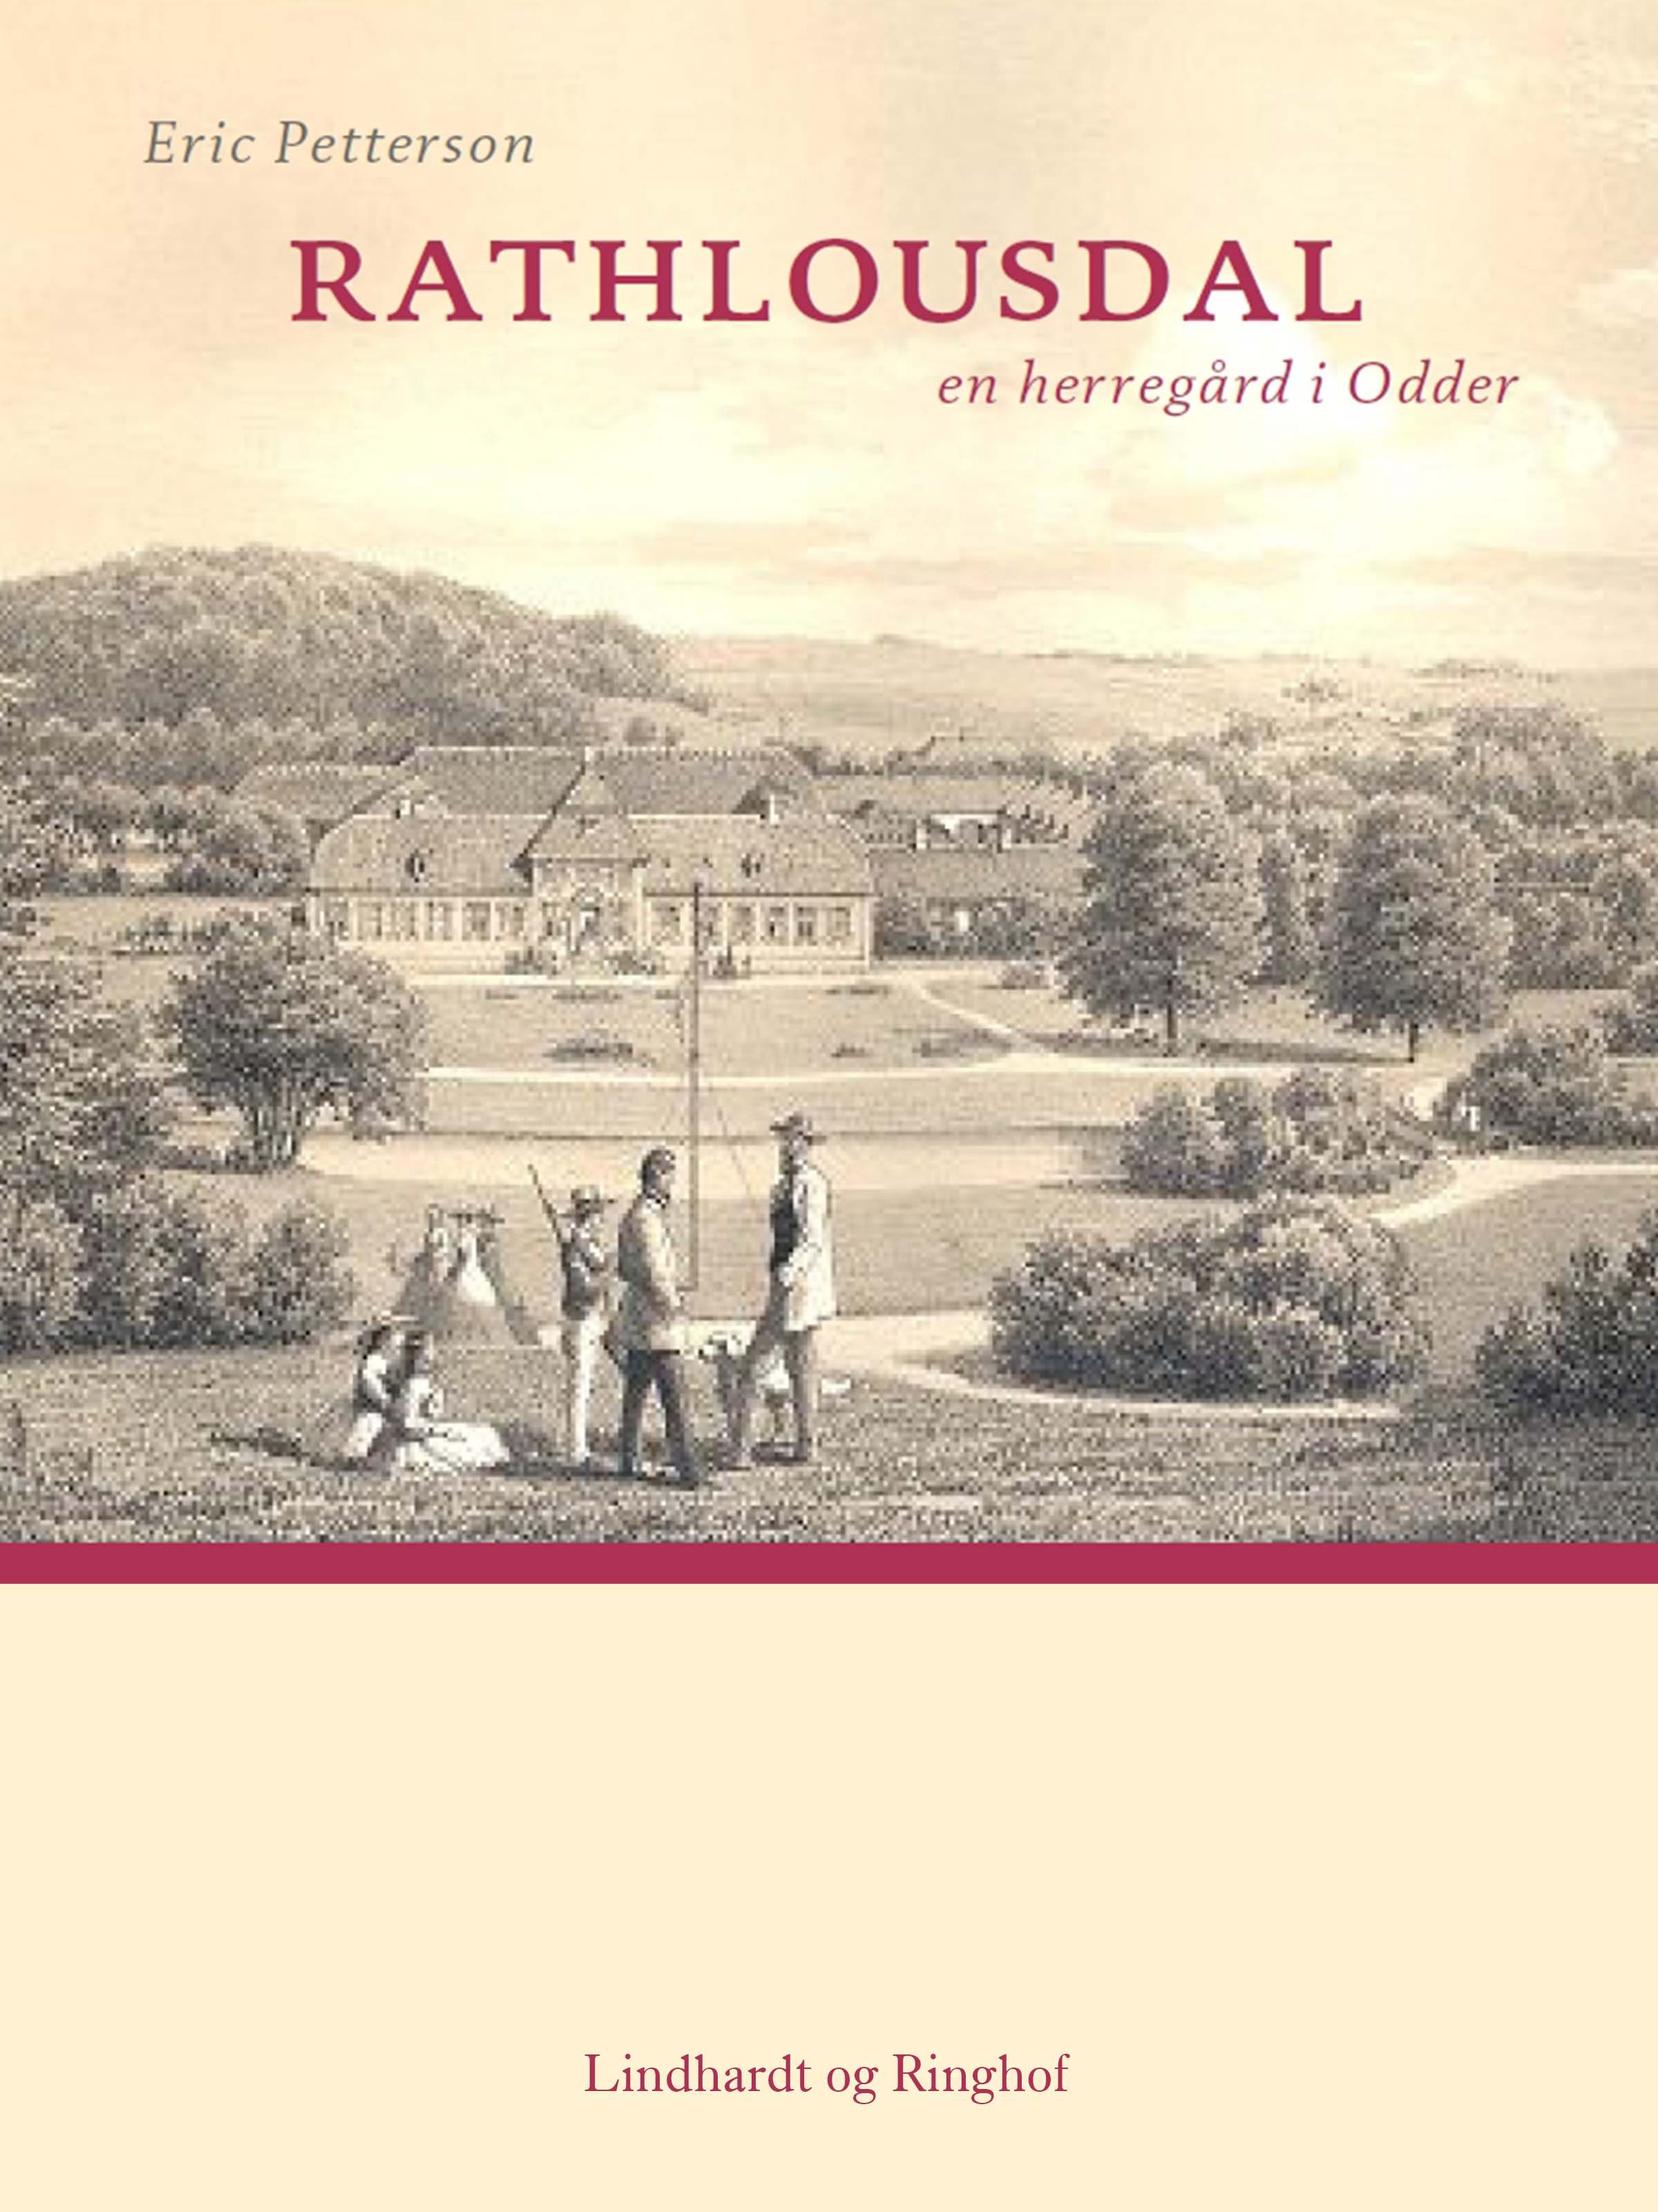 Rathlousdal - en herregård i Odder, e-bog af Eric Pettersson